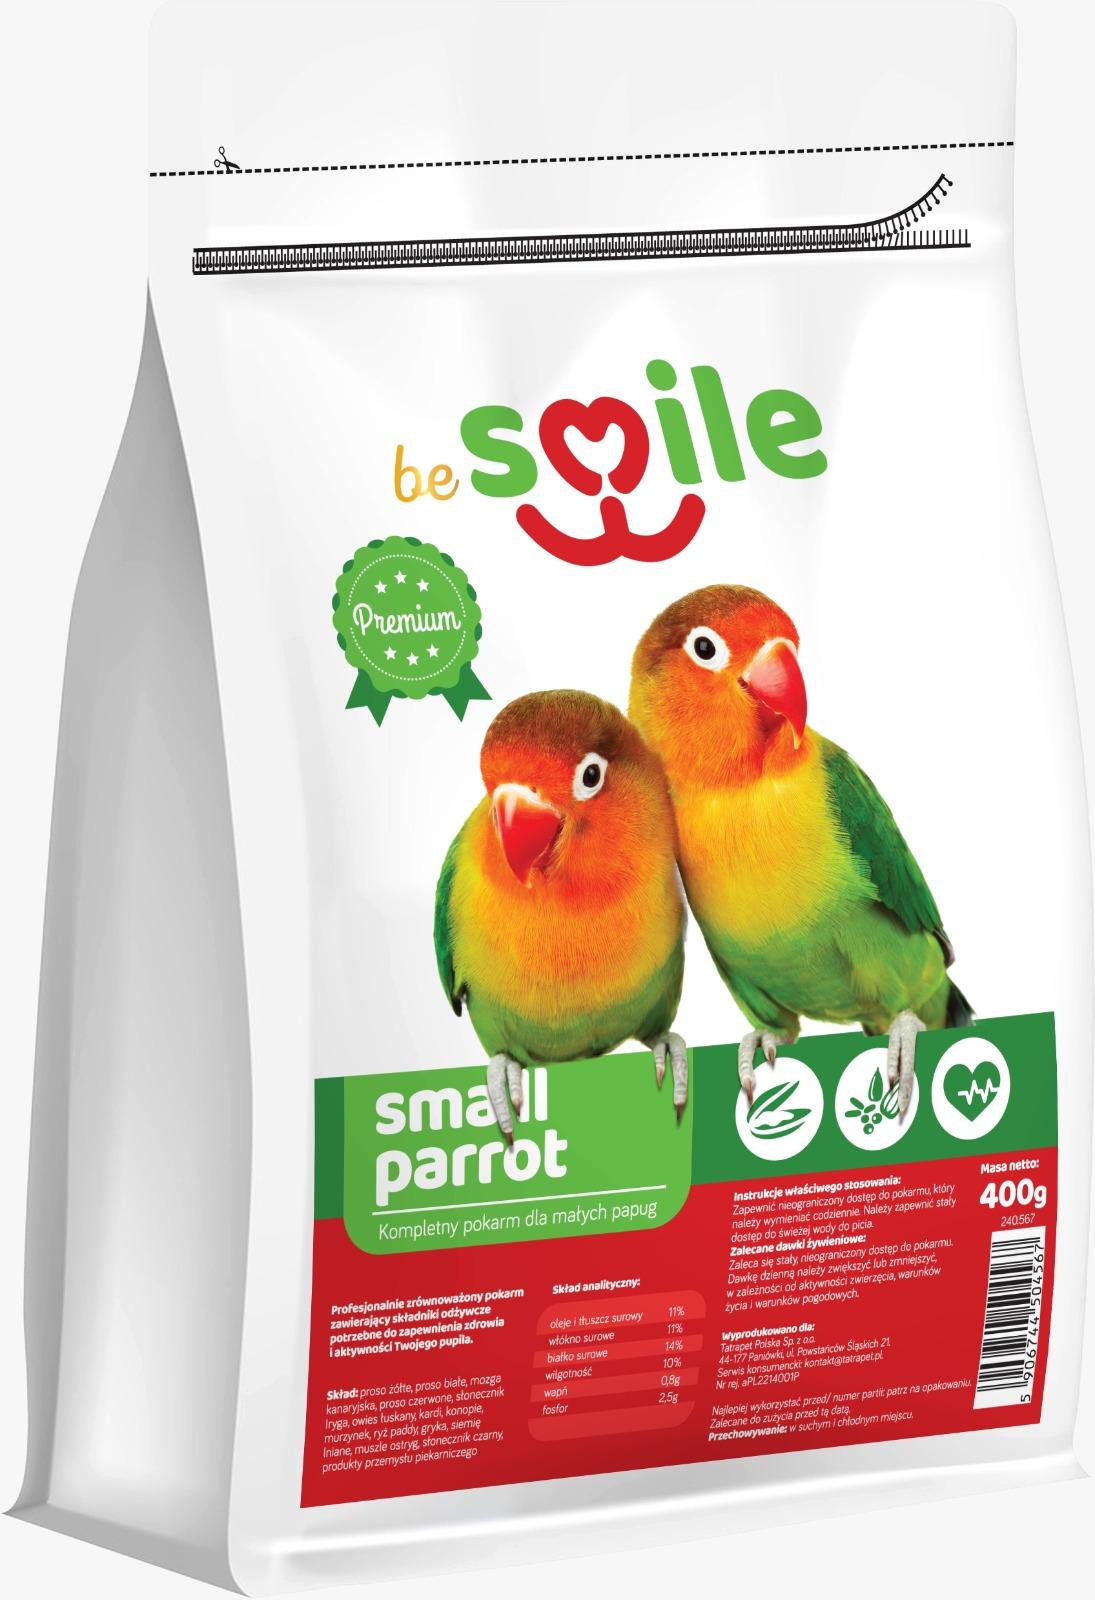 Karma beSMILE PARROT- Small Parrot 800g pokarm dla małych papug